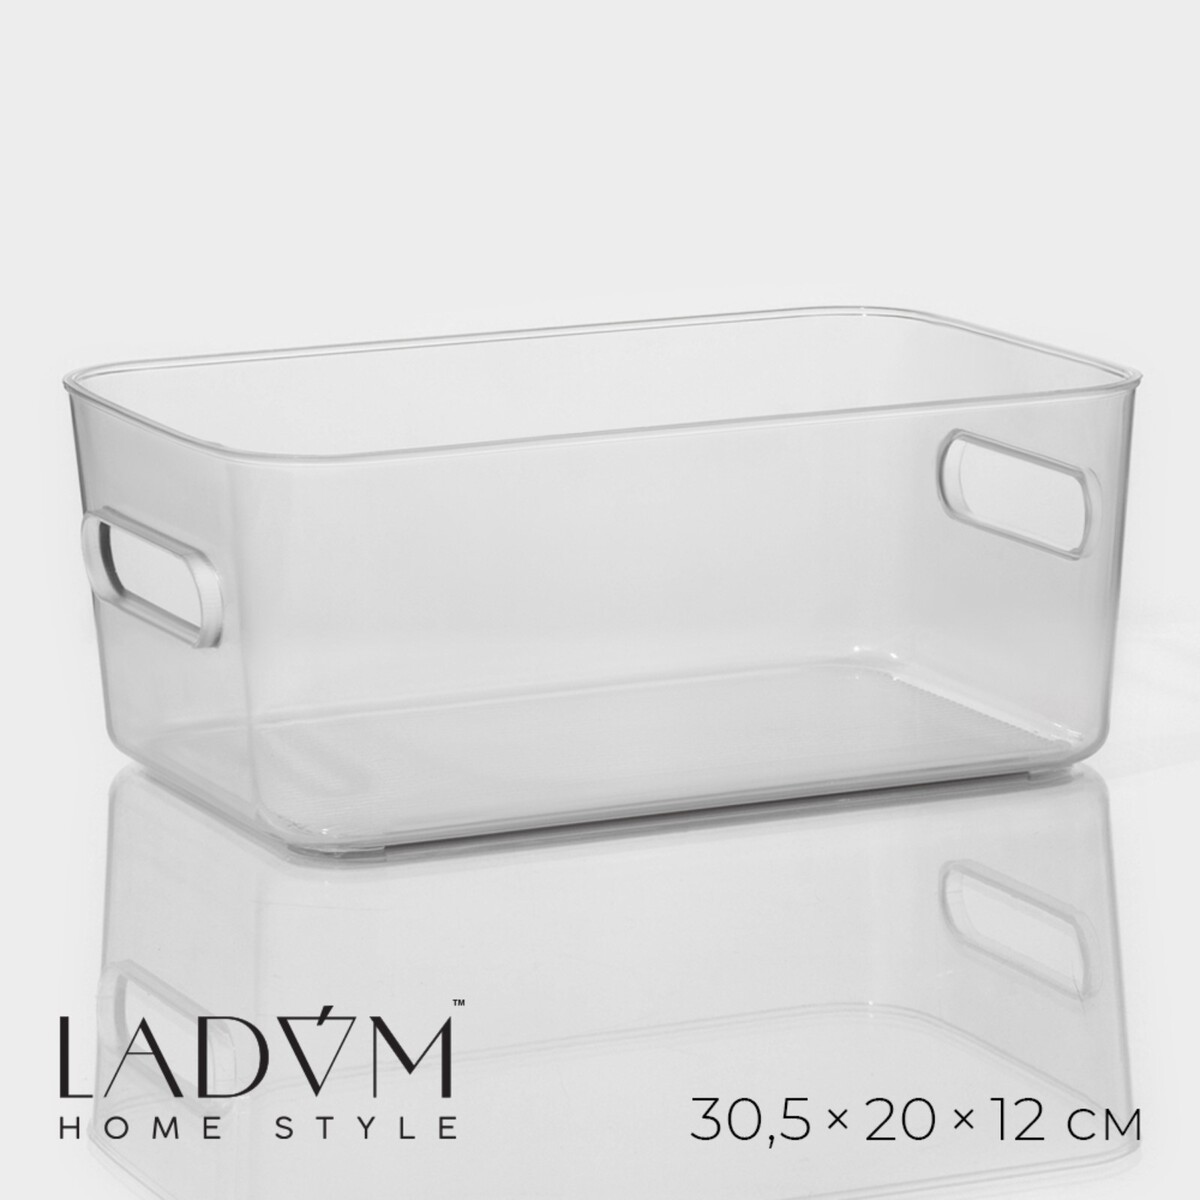 Контейнер для хранения ladо́m, 30,5×20×12 см, цвет прозрачный